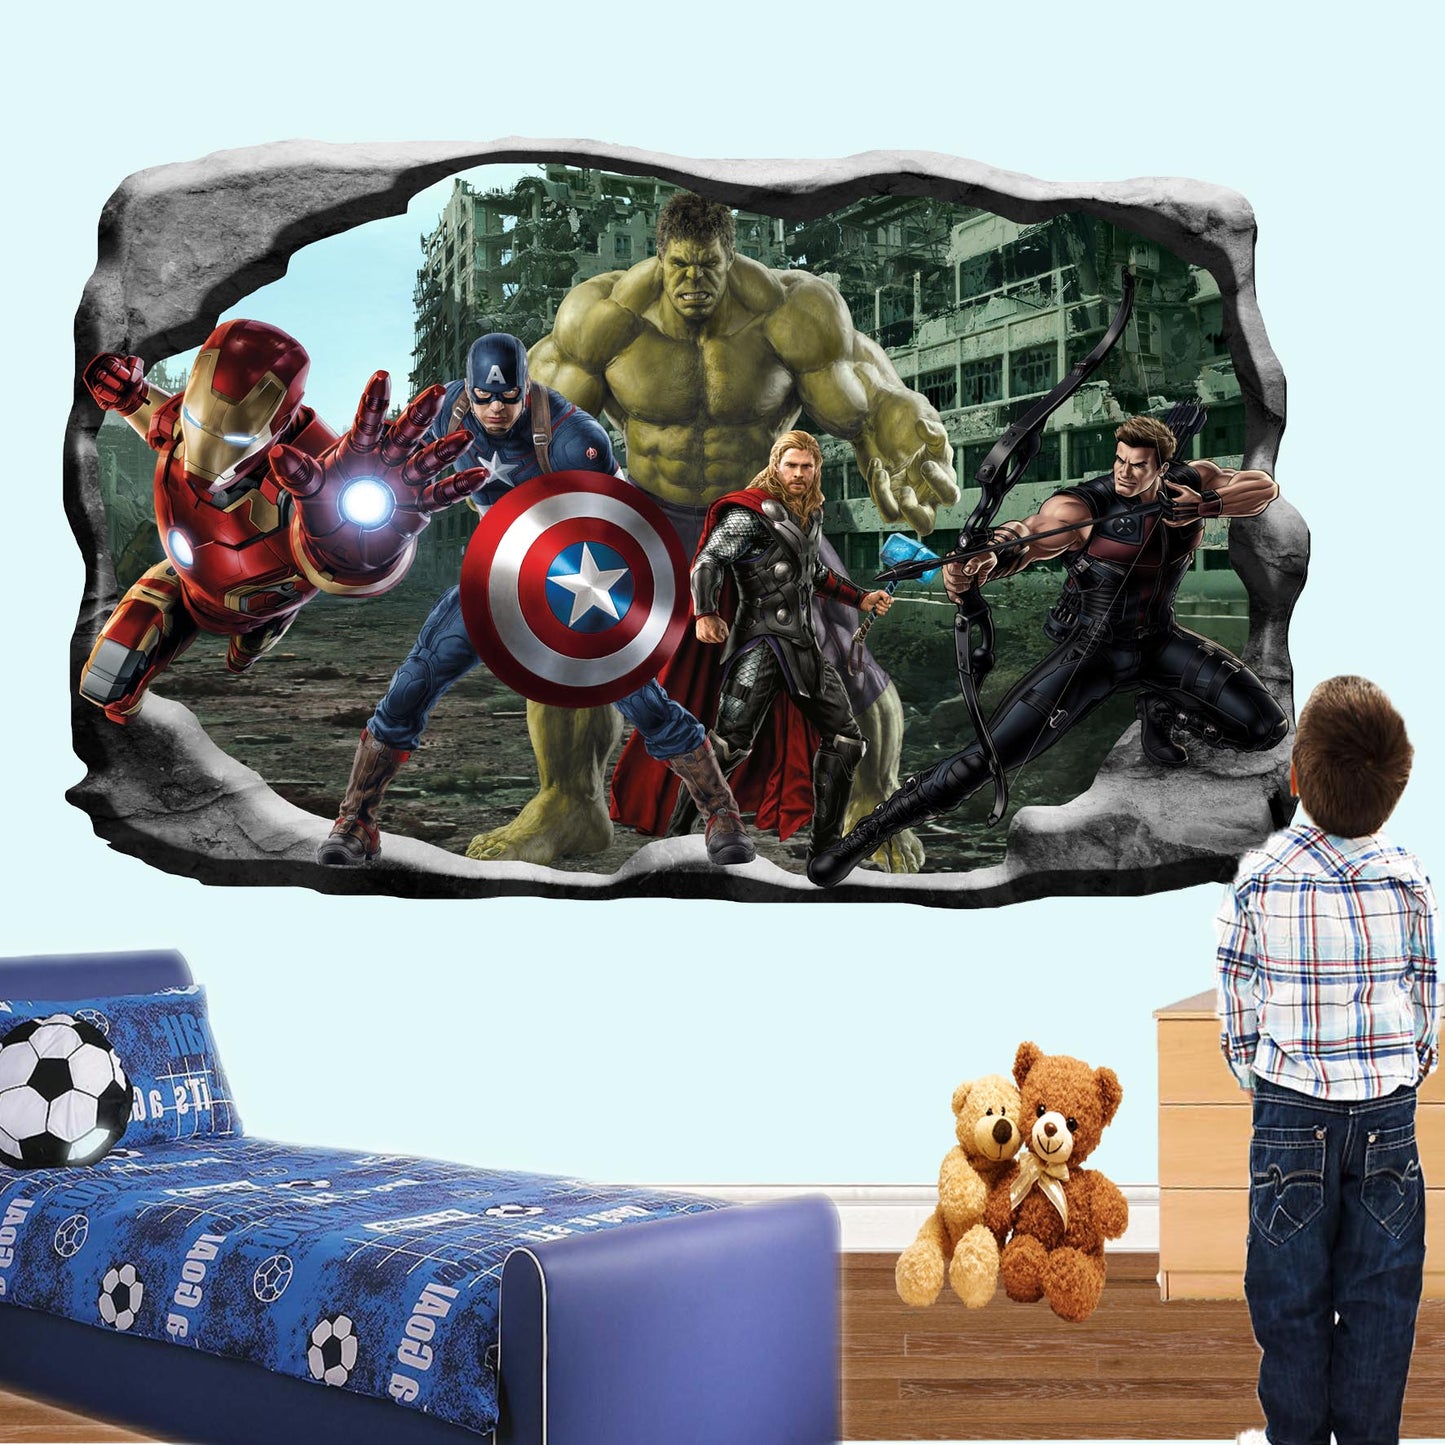 Marvel avengers hulk captain america thor poster sticker mural decal